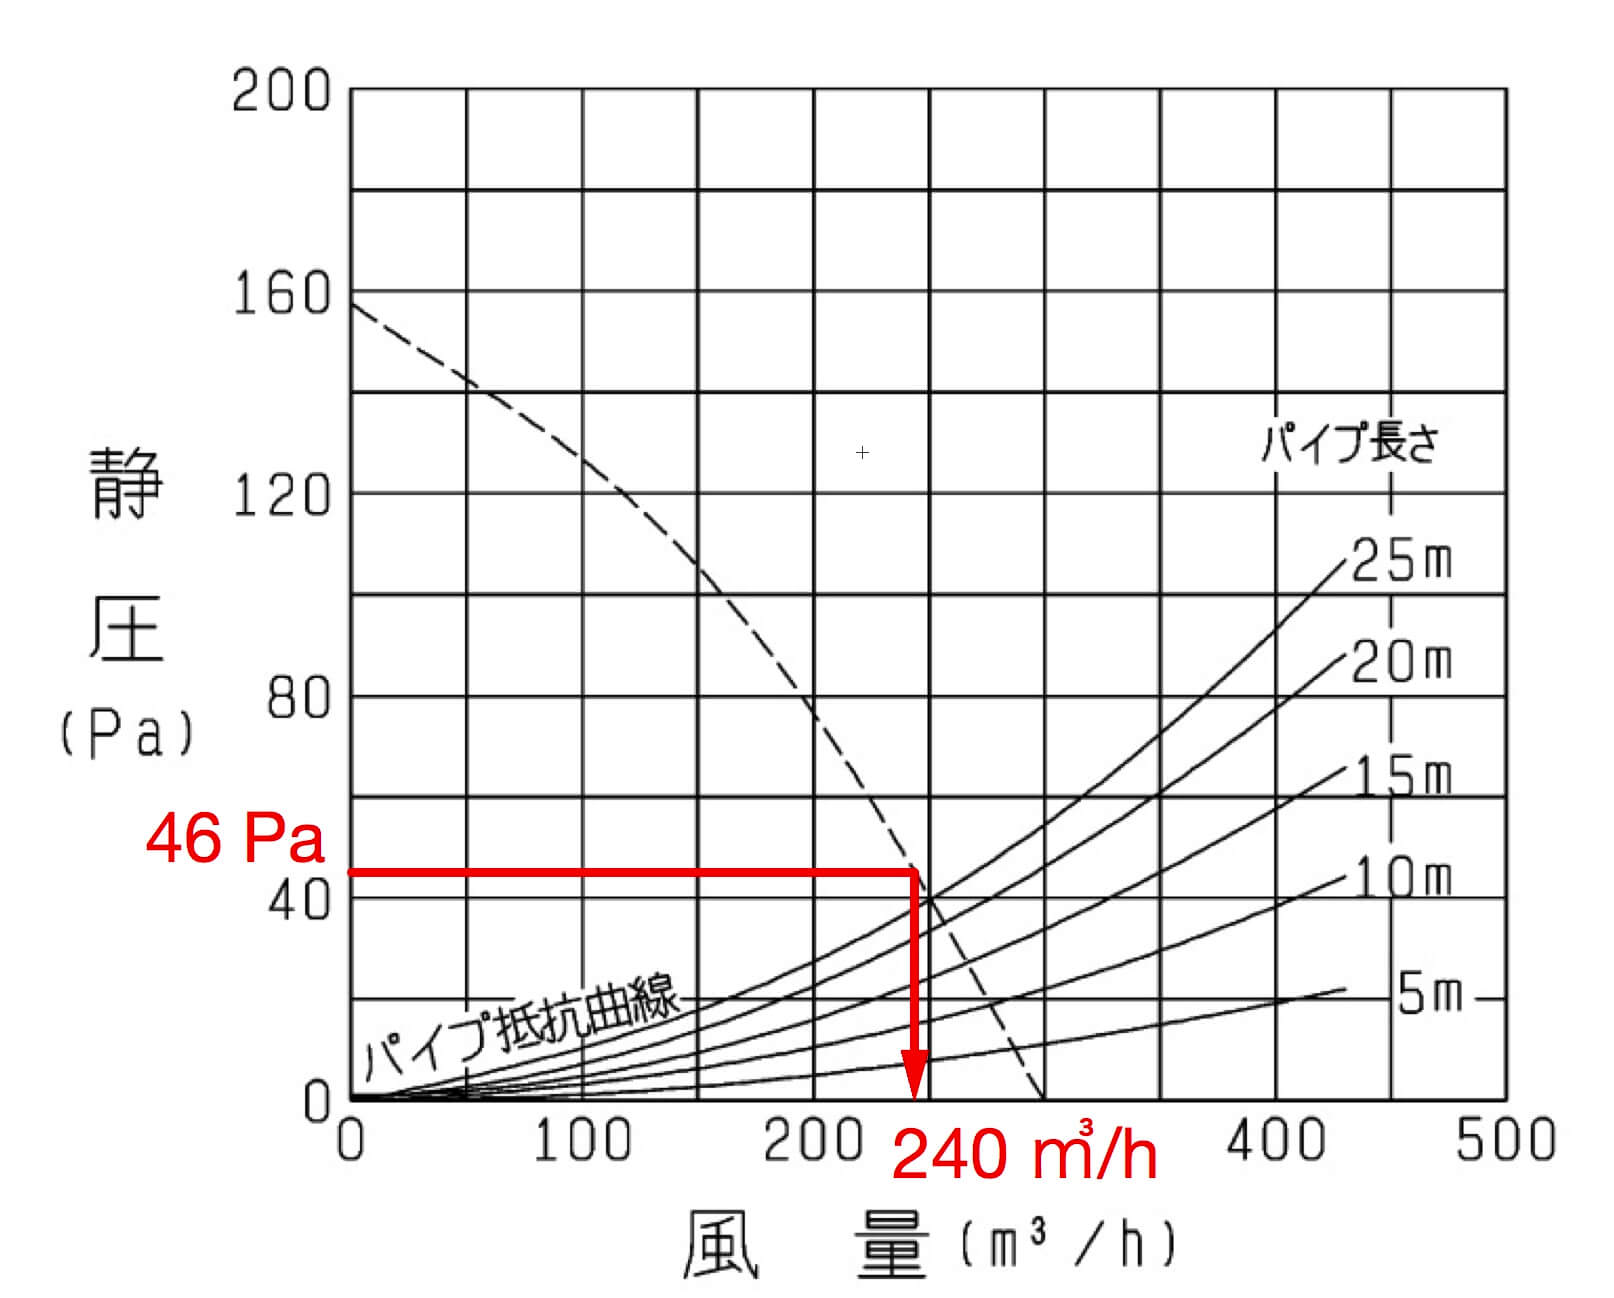 ダクト式換気扇の圧力損失計算 等圧法 の解説と摩擦抵抗線図の見方